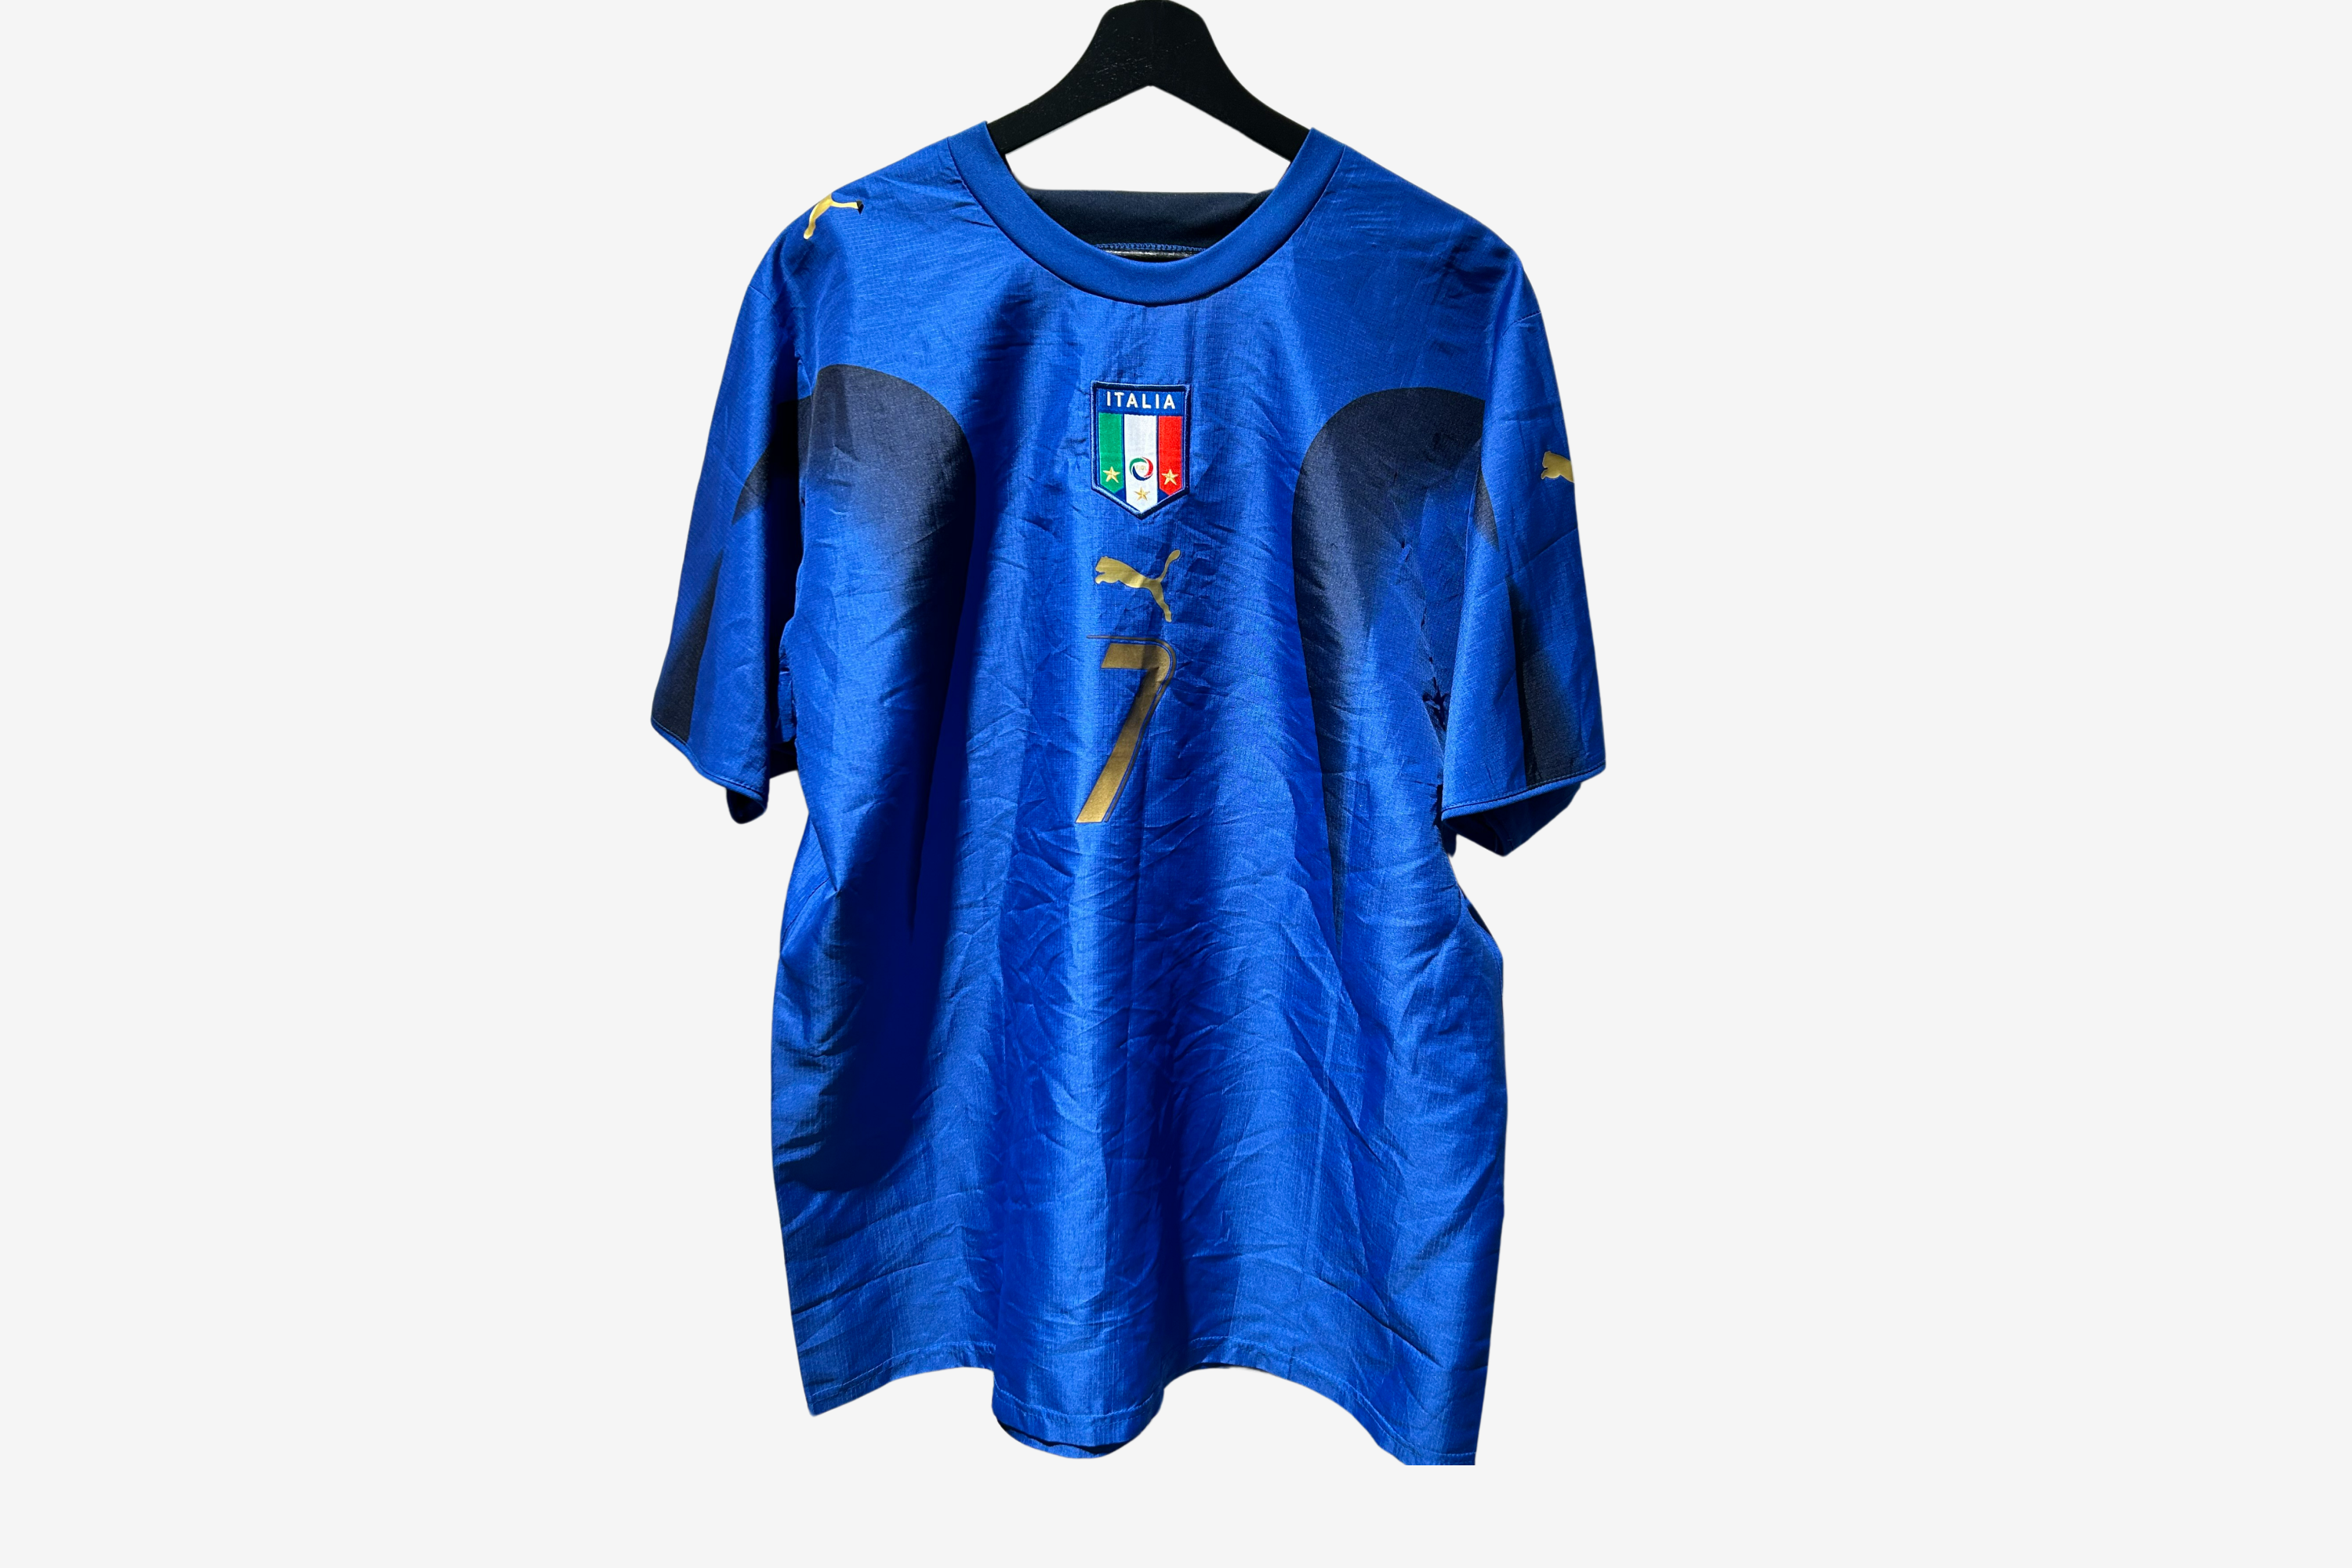 Puma - Italy 2006 Home Football Shirt 'DEL PIERO'